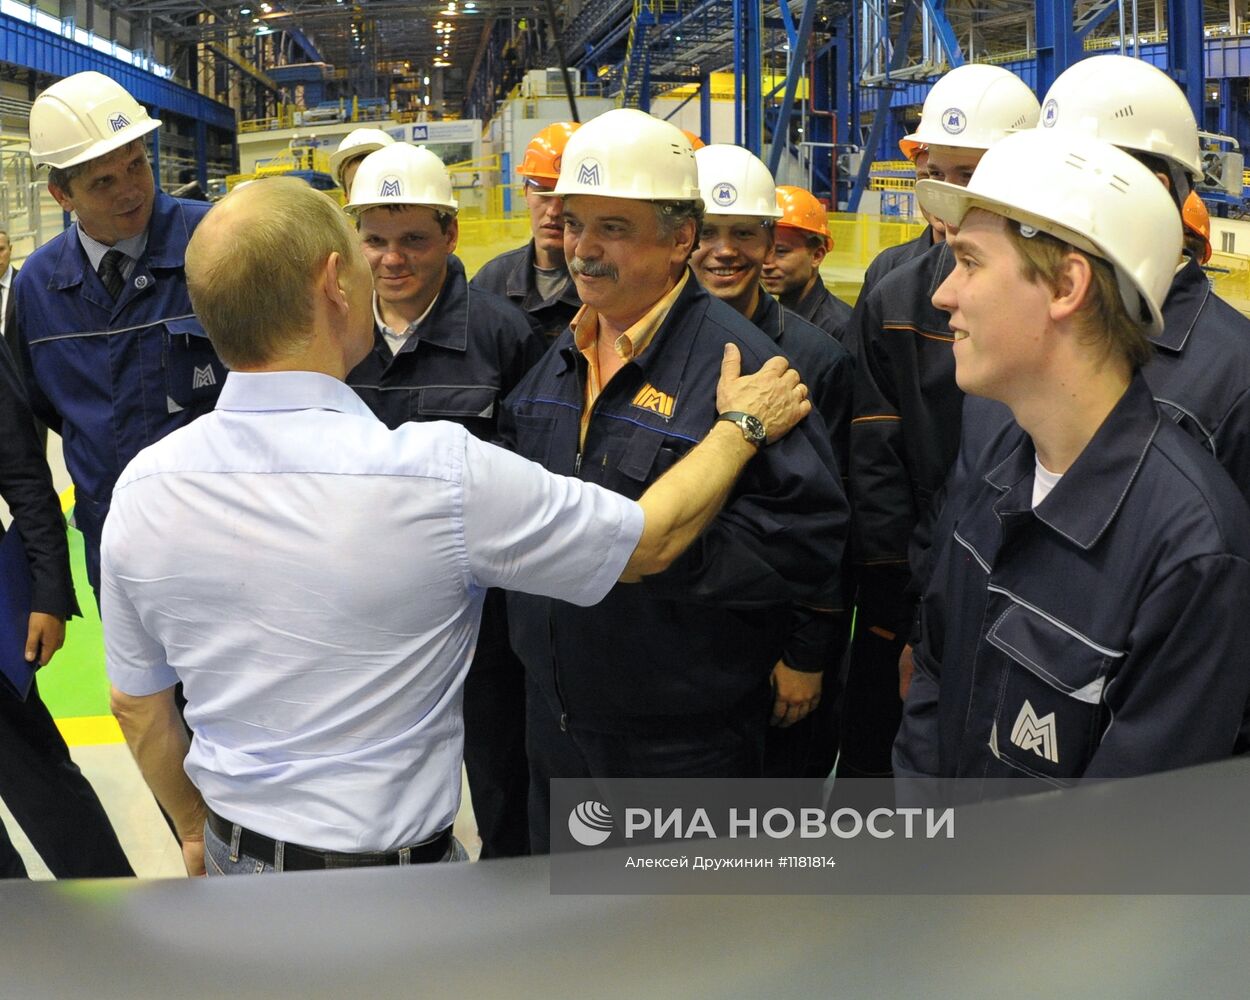 Рабочая поездка В.Путина в Уральский федеральный округ